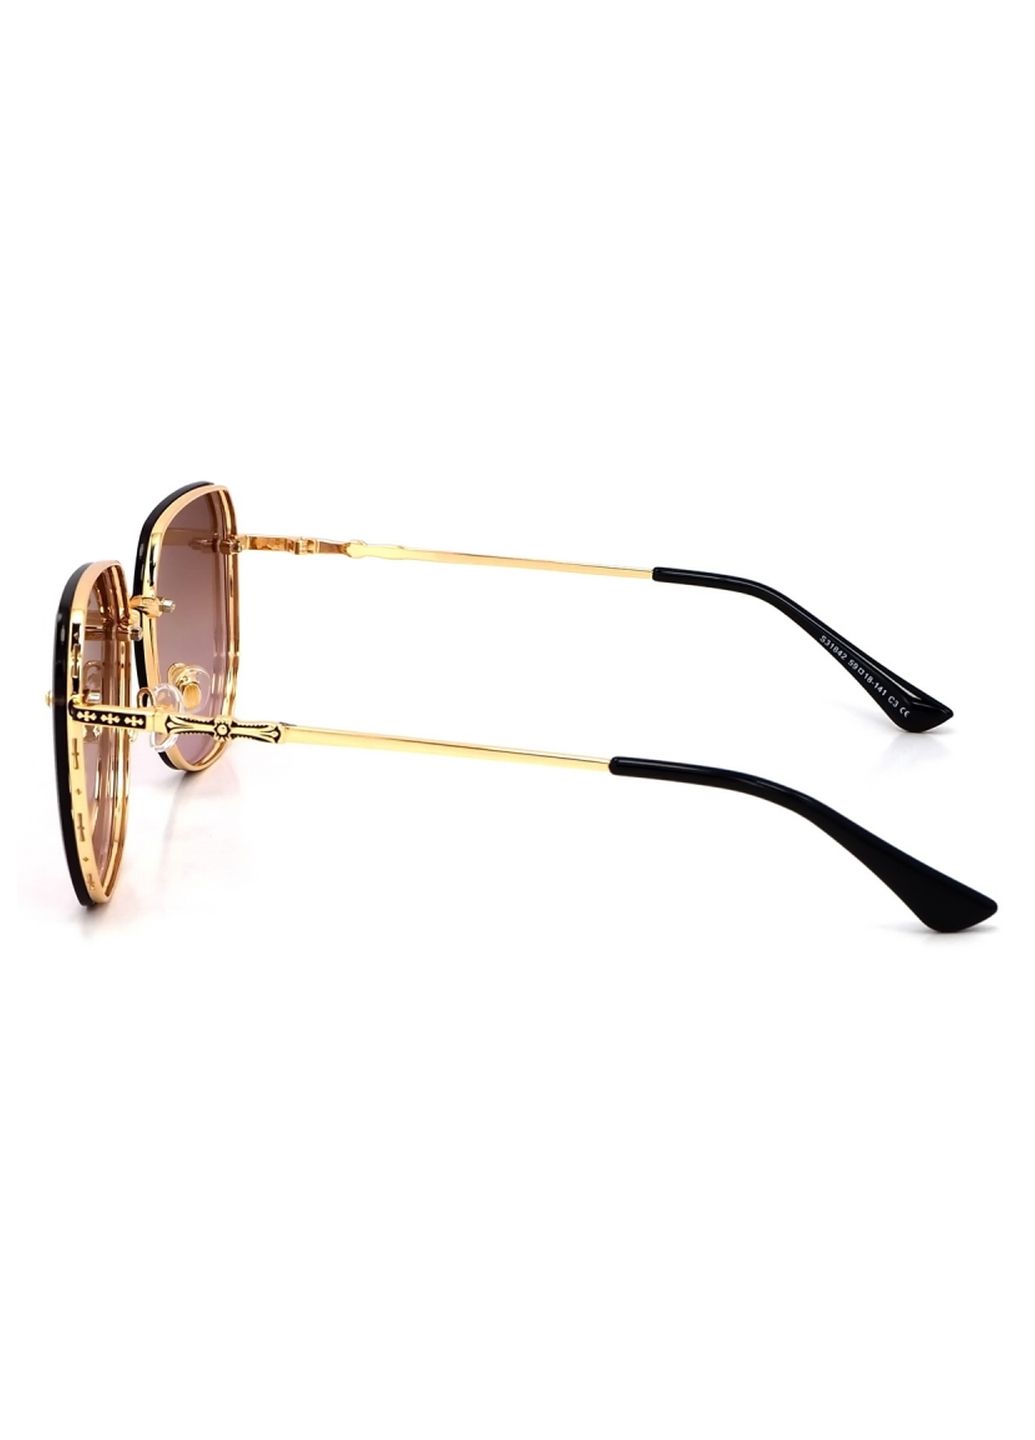 Купить Женские солнцезащитные очки Merlini с поляризацией S31842 117122 - Золотистый в интернет-магазине